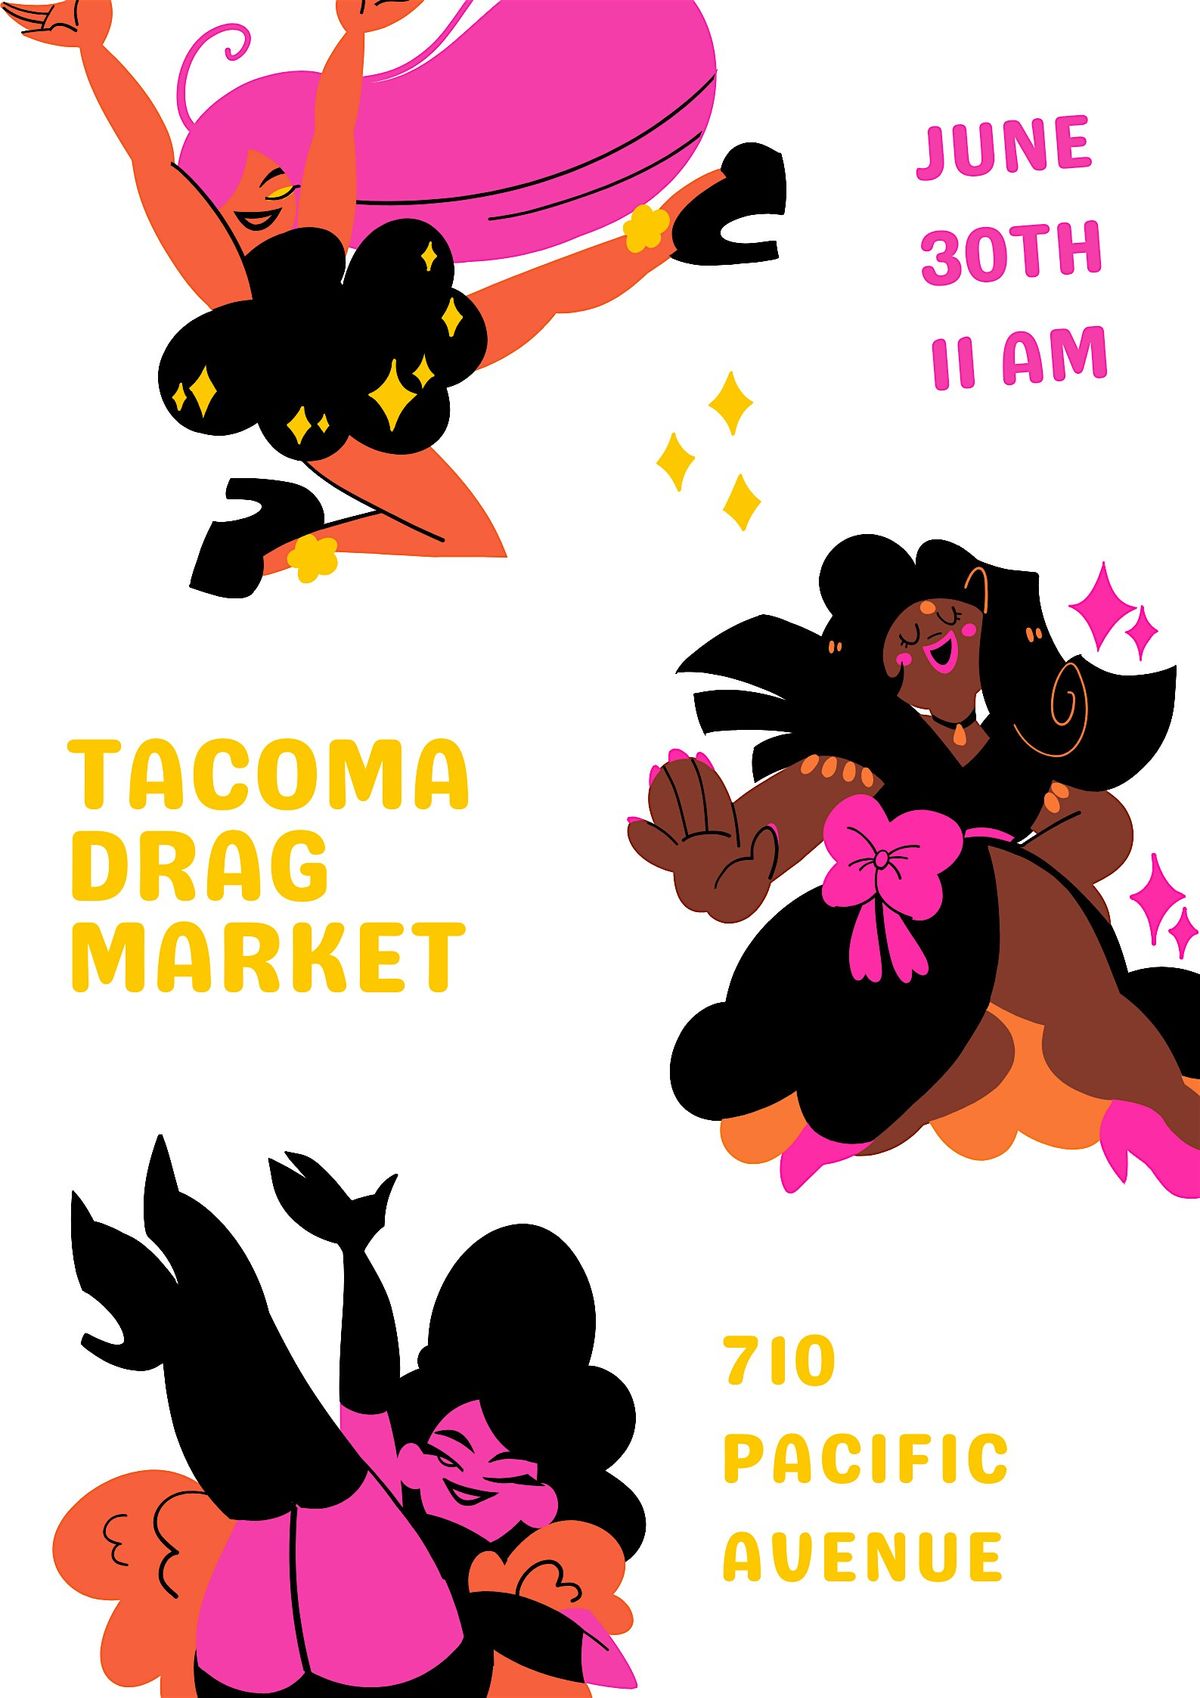 Large Ladies of Tacoma - Sunday Drag Market Meet-Up